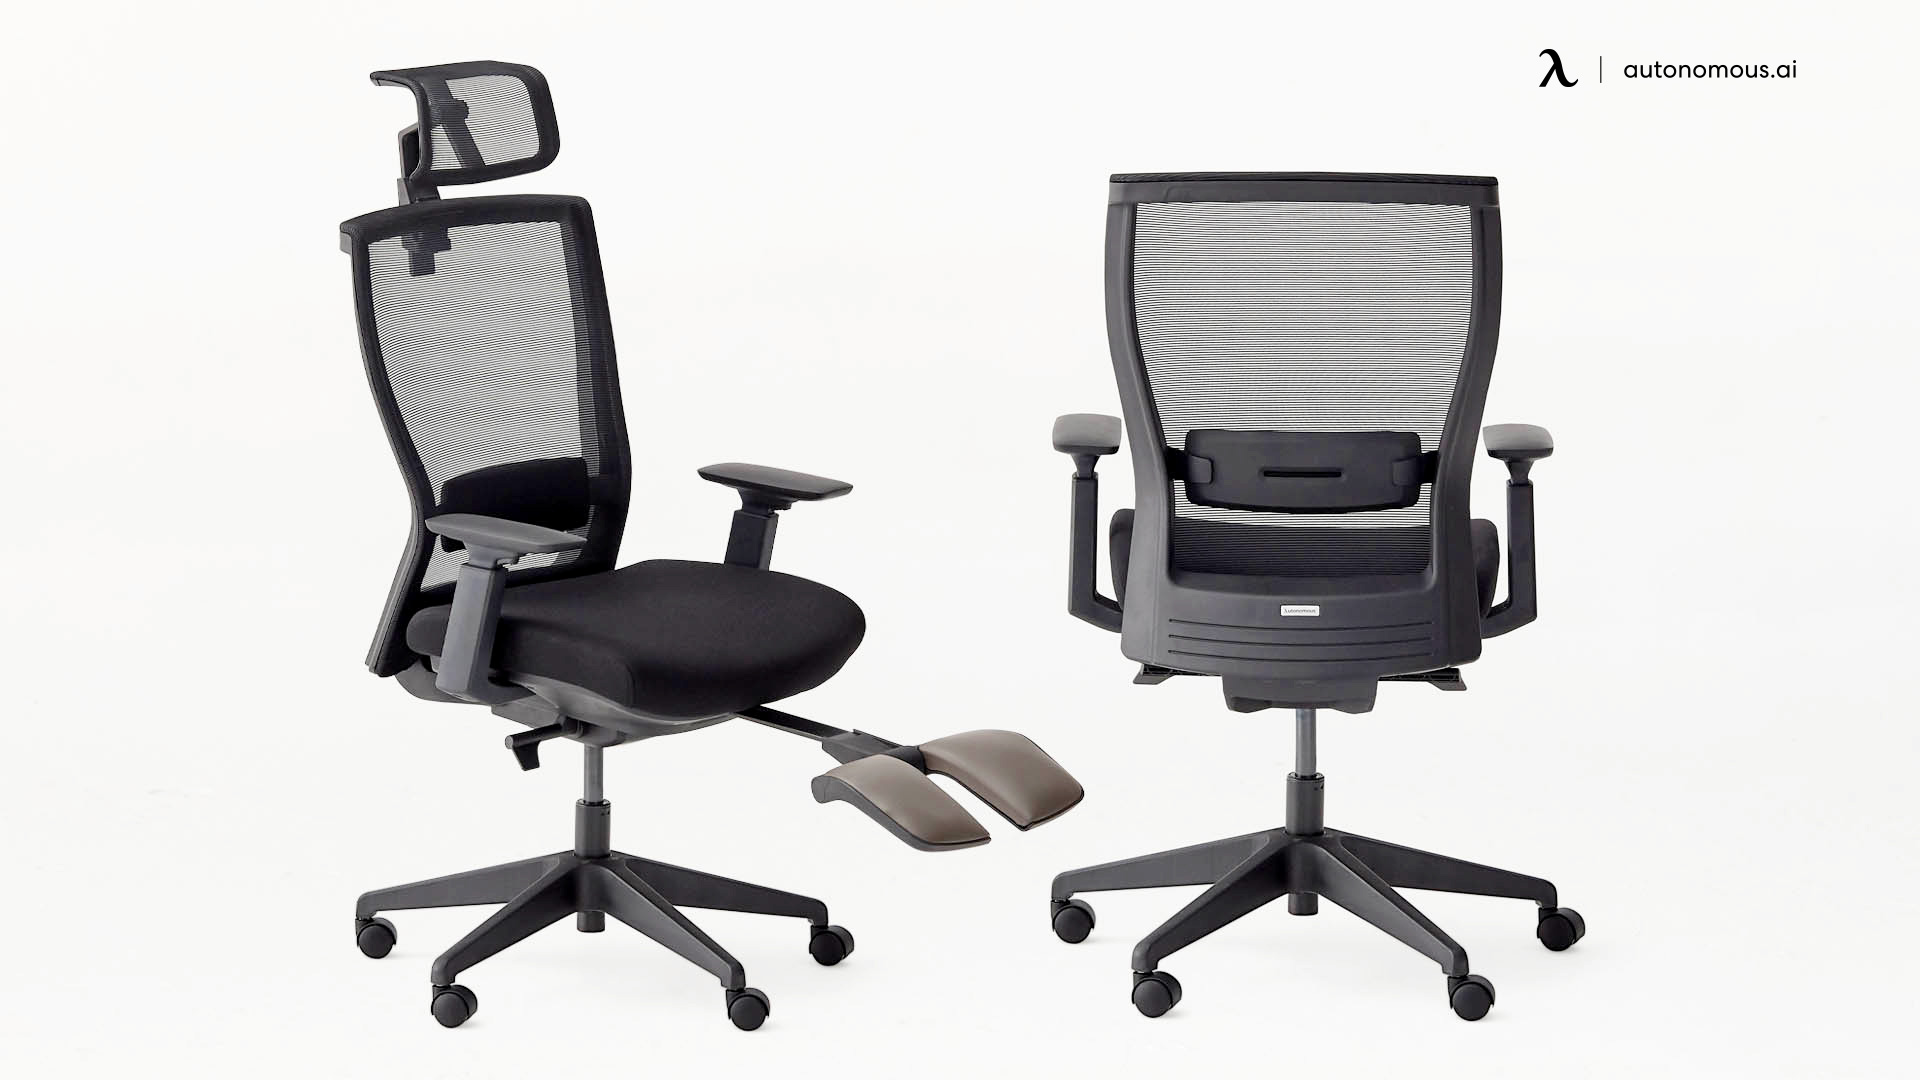 ErgoChair Recline mesh office chair with a headrest